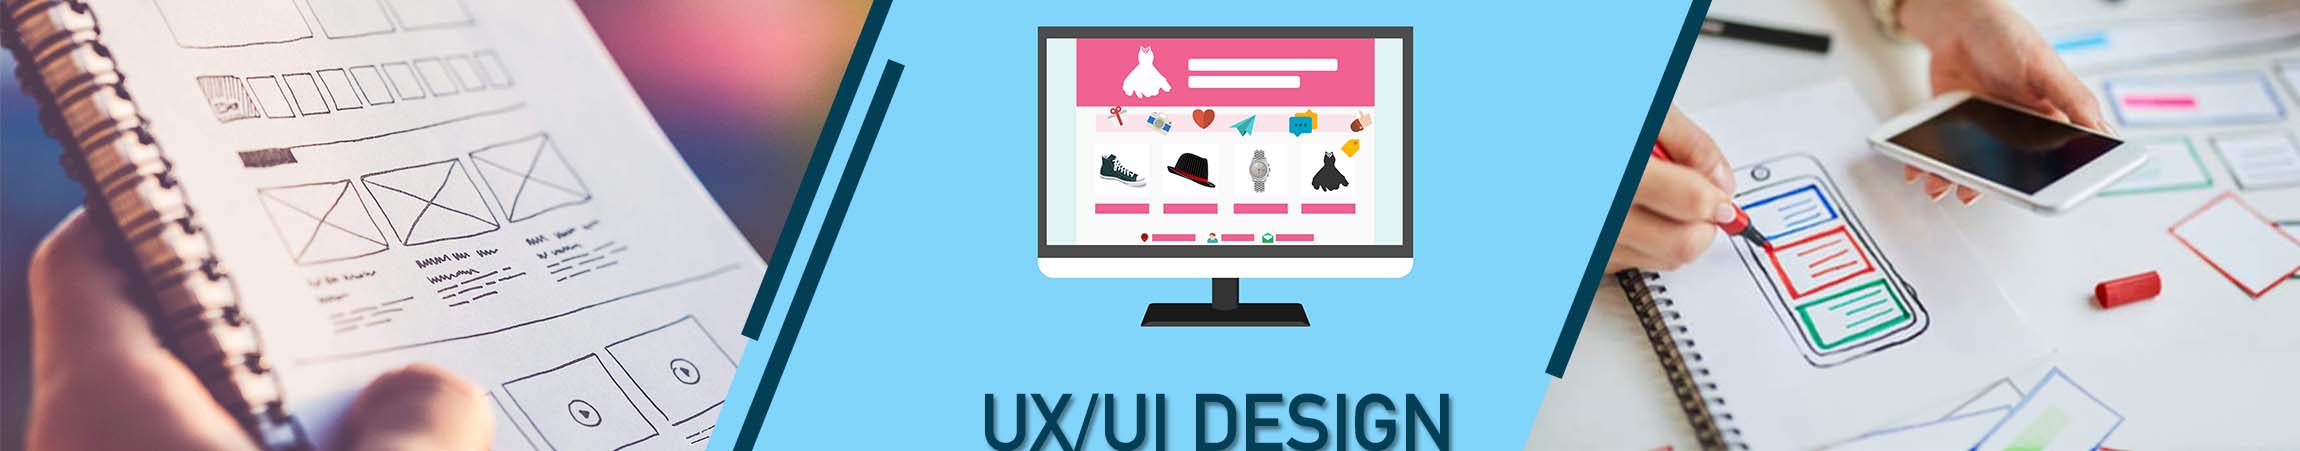 Formation UX/UI Design